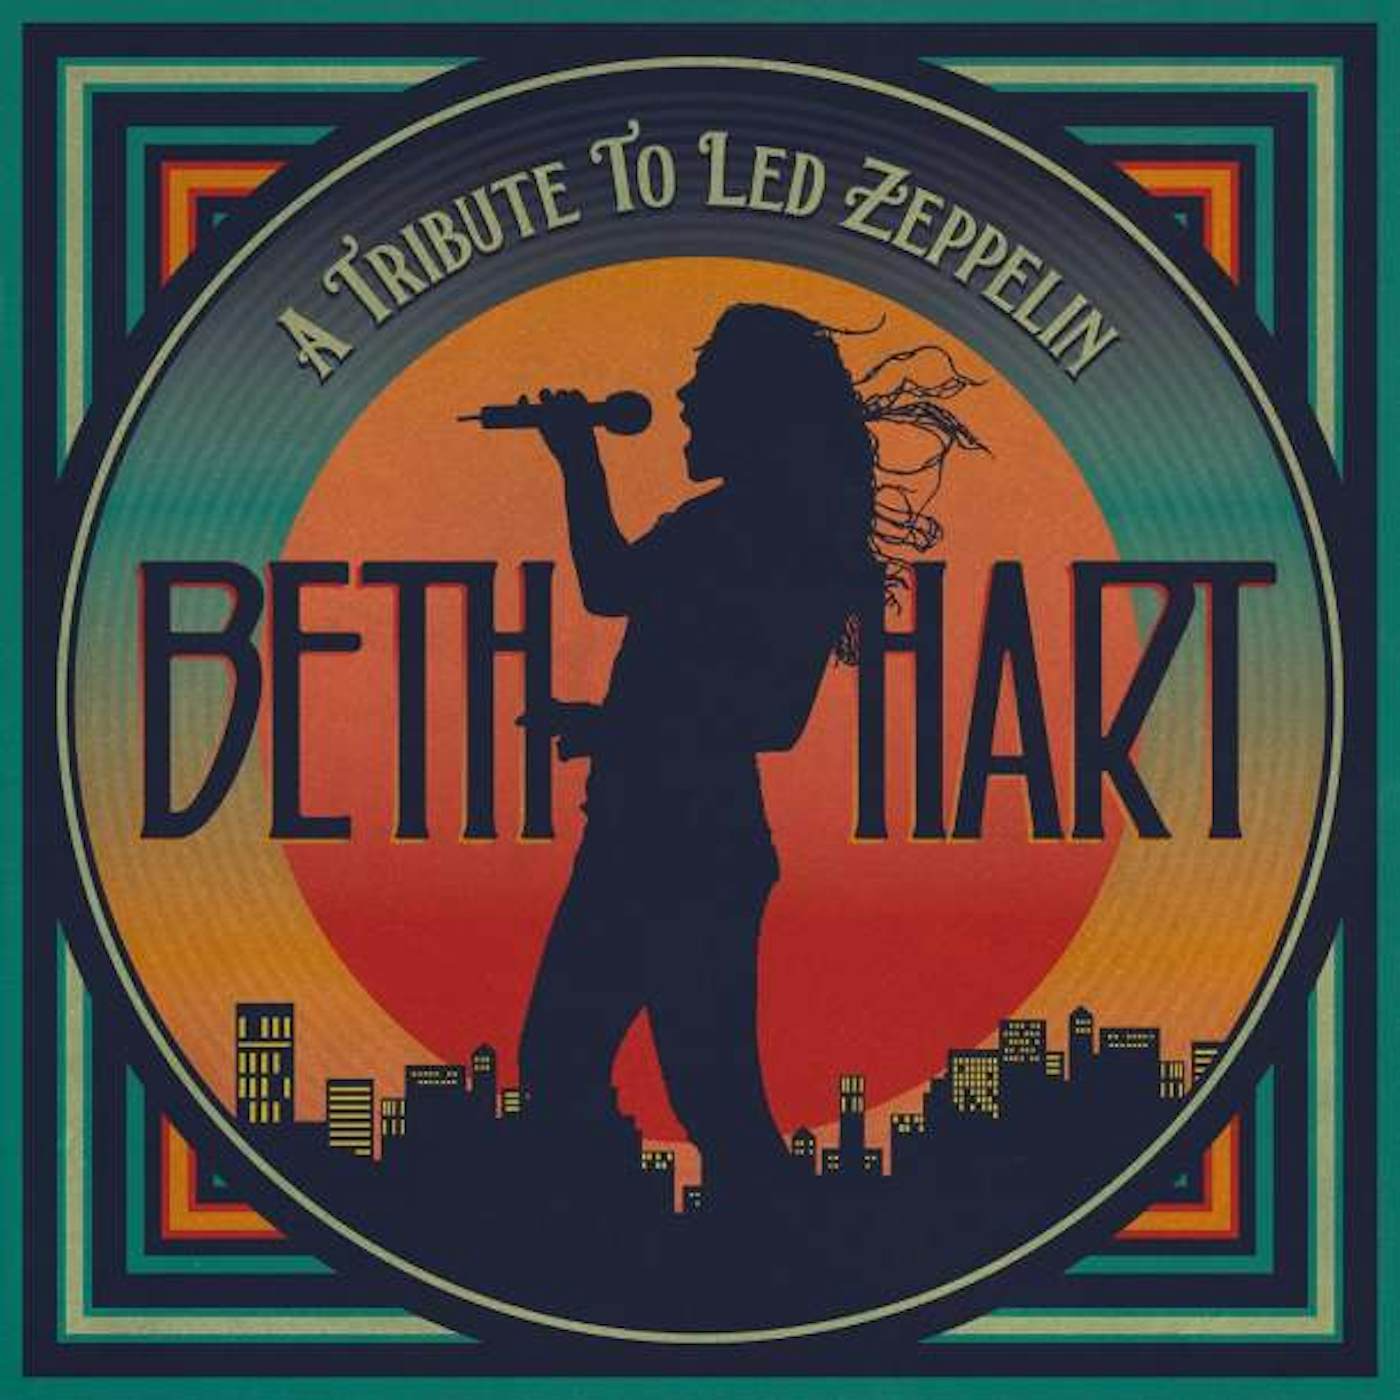 Beth Hart TRIBUTE TO LED ZEPPELIN CD